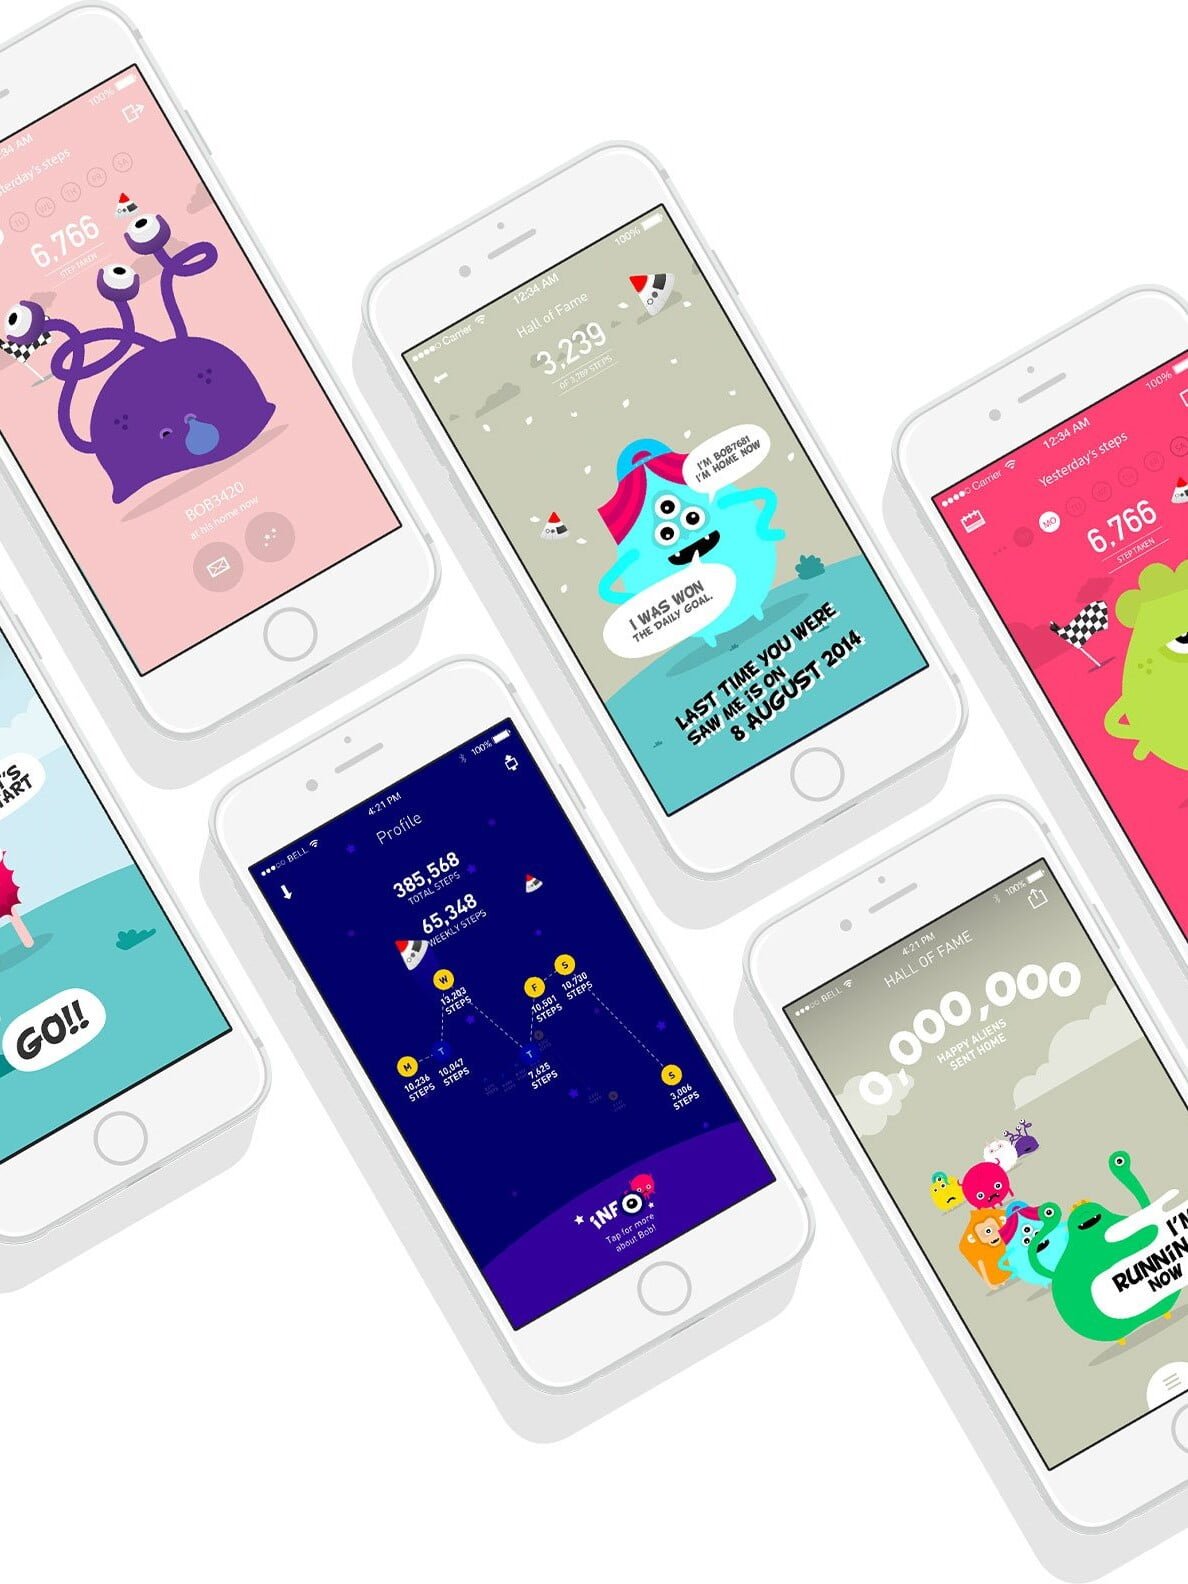 wlw-future-app-mobile-design-essex-london